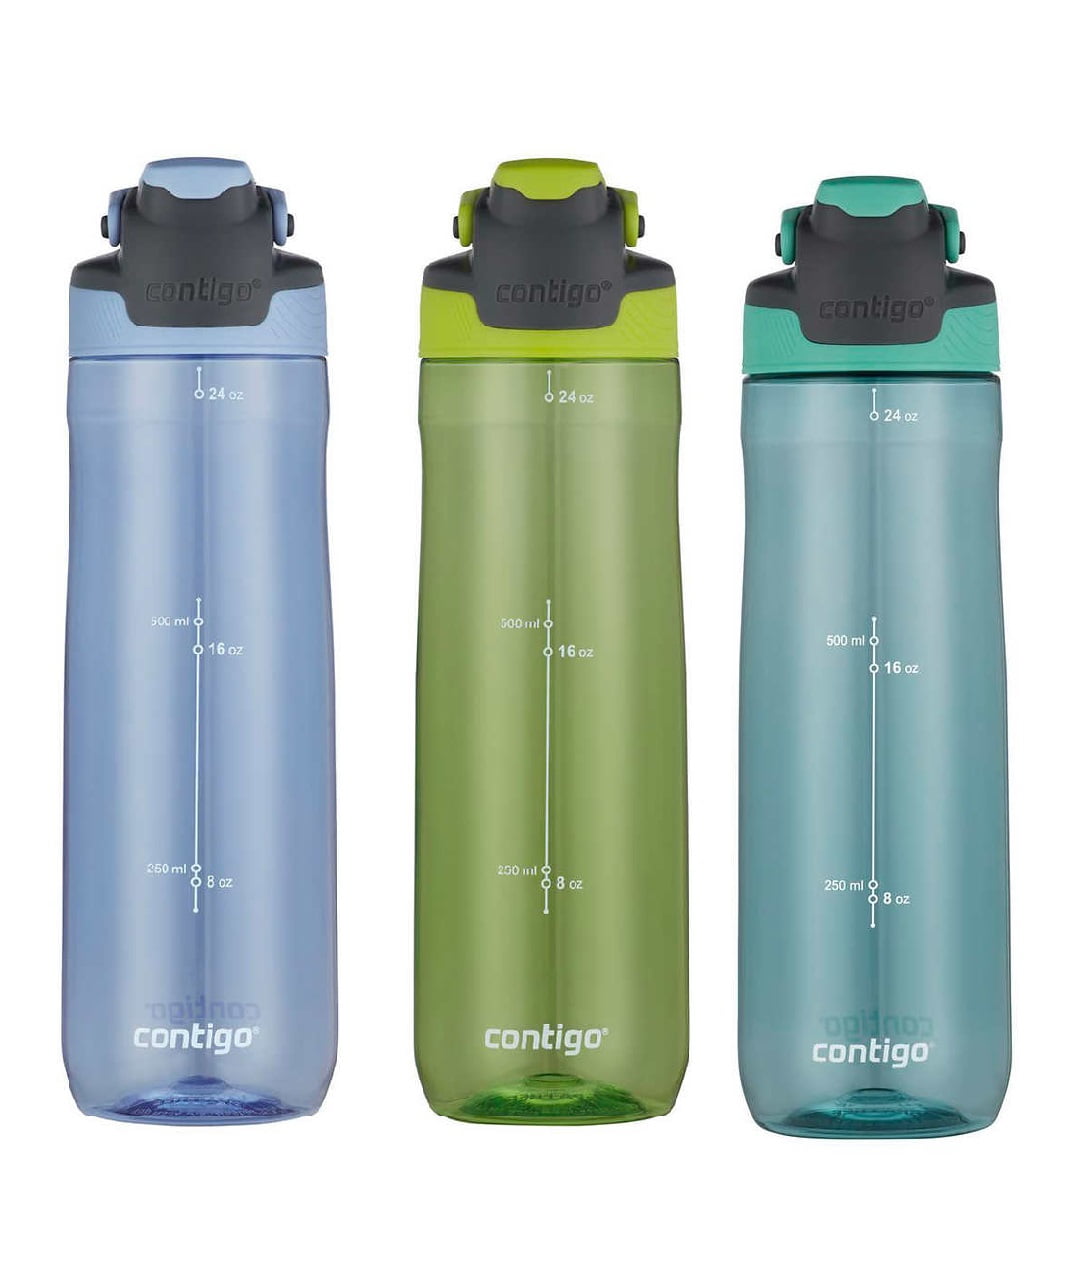 Contigo Autoseal 24oz.Green Spill-proof Water Bottle, 3-pack